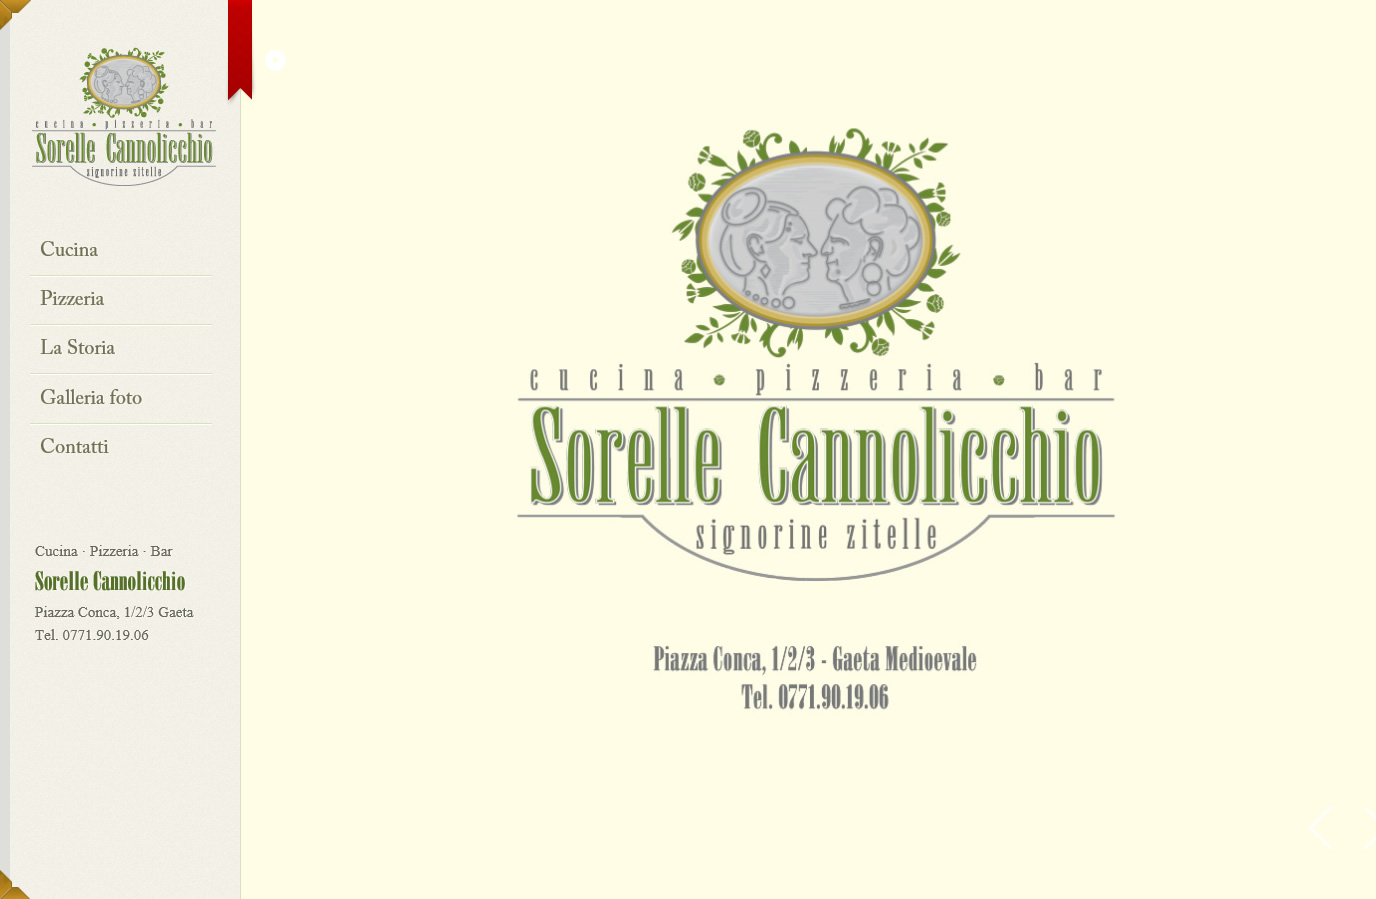 Sorelle Cannolicchio